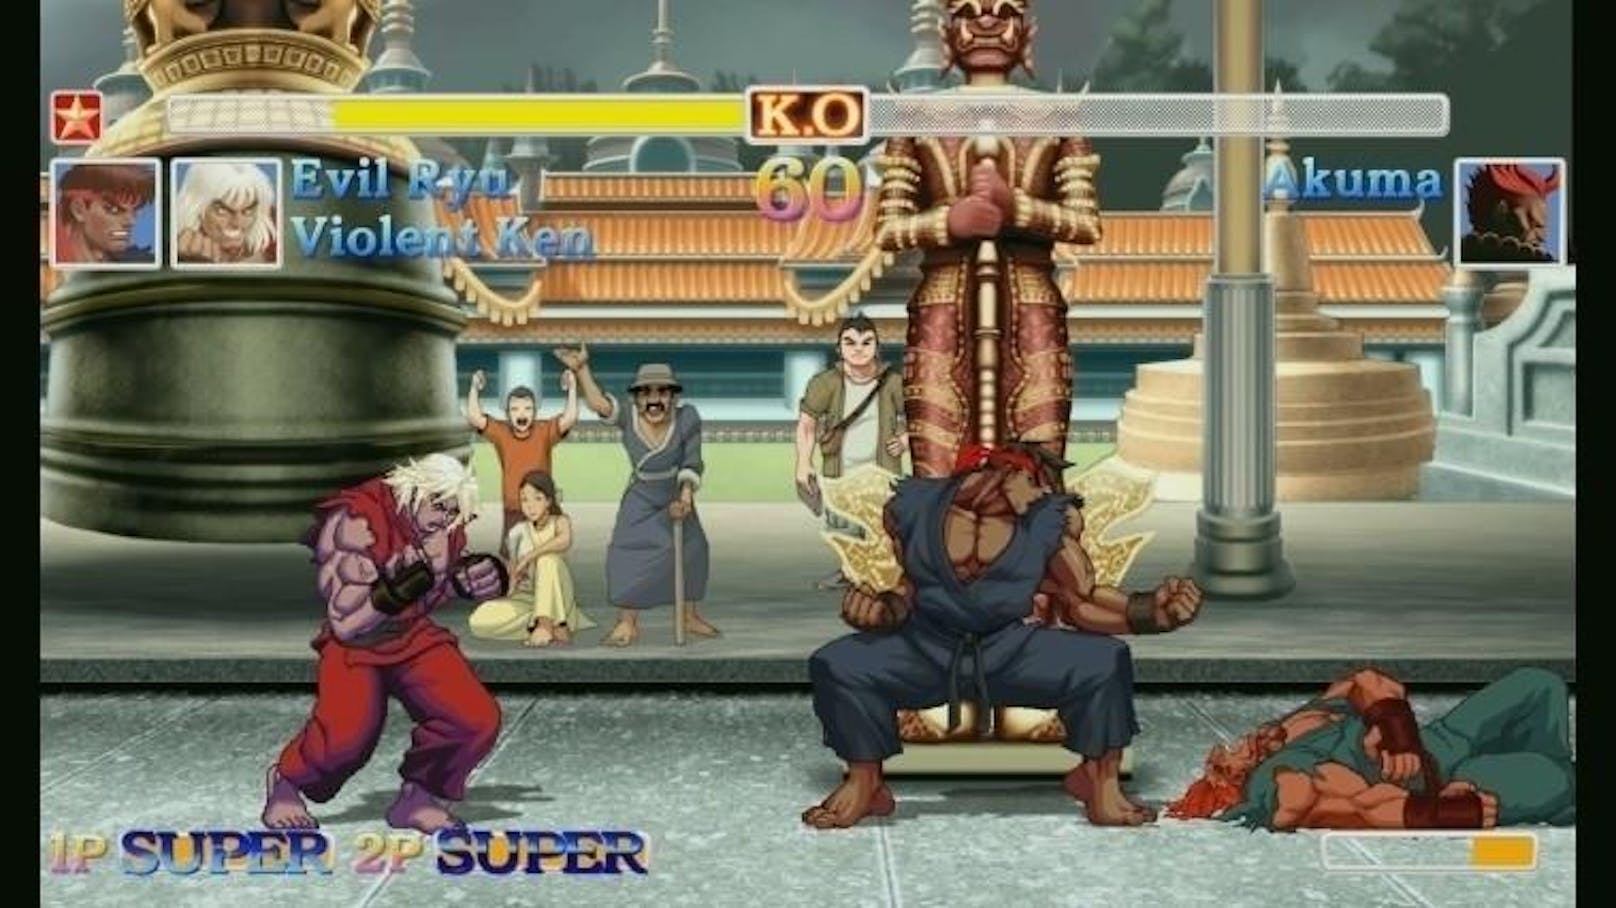 Auf einen gänzlich neuen Kämpfer muss man in The Finals Challengers leider verzichten. Dafür gibt es zumindest mit "Evil Ryu" und "Violent Ken" zwei etwas brutal-schnellere Charaktere zum Ausprobieren.